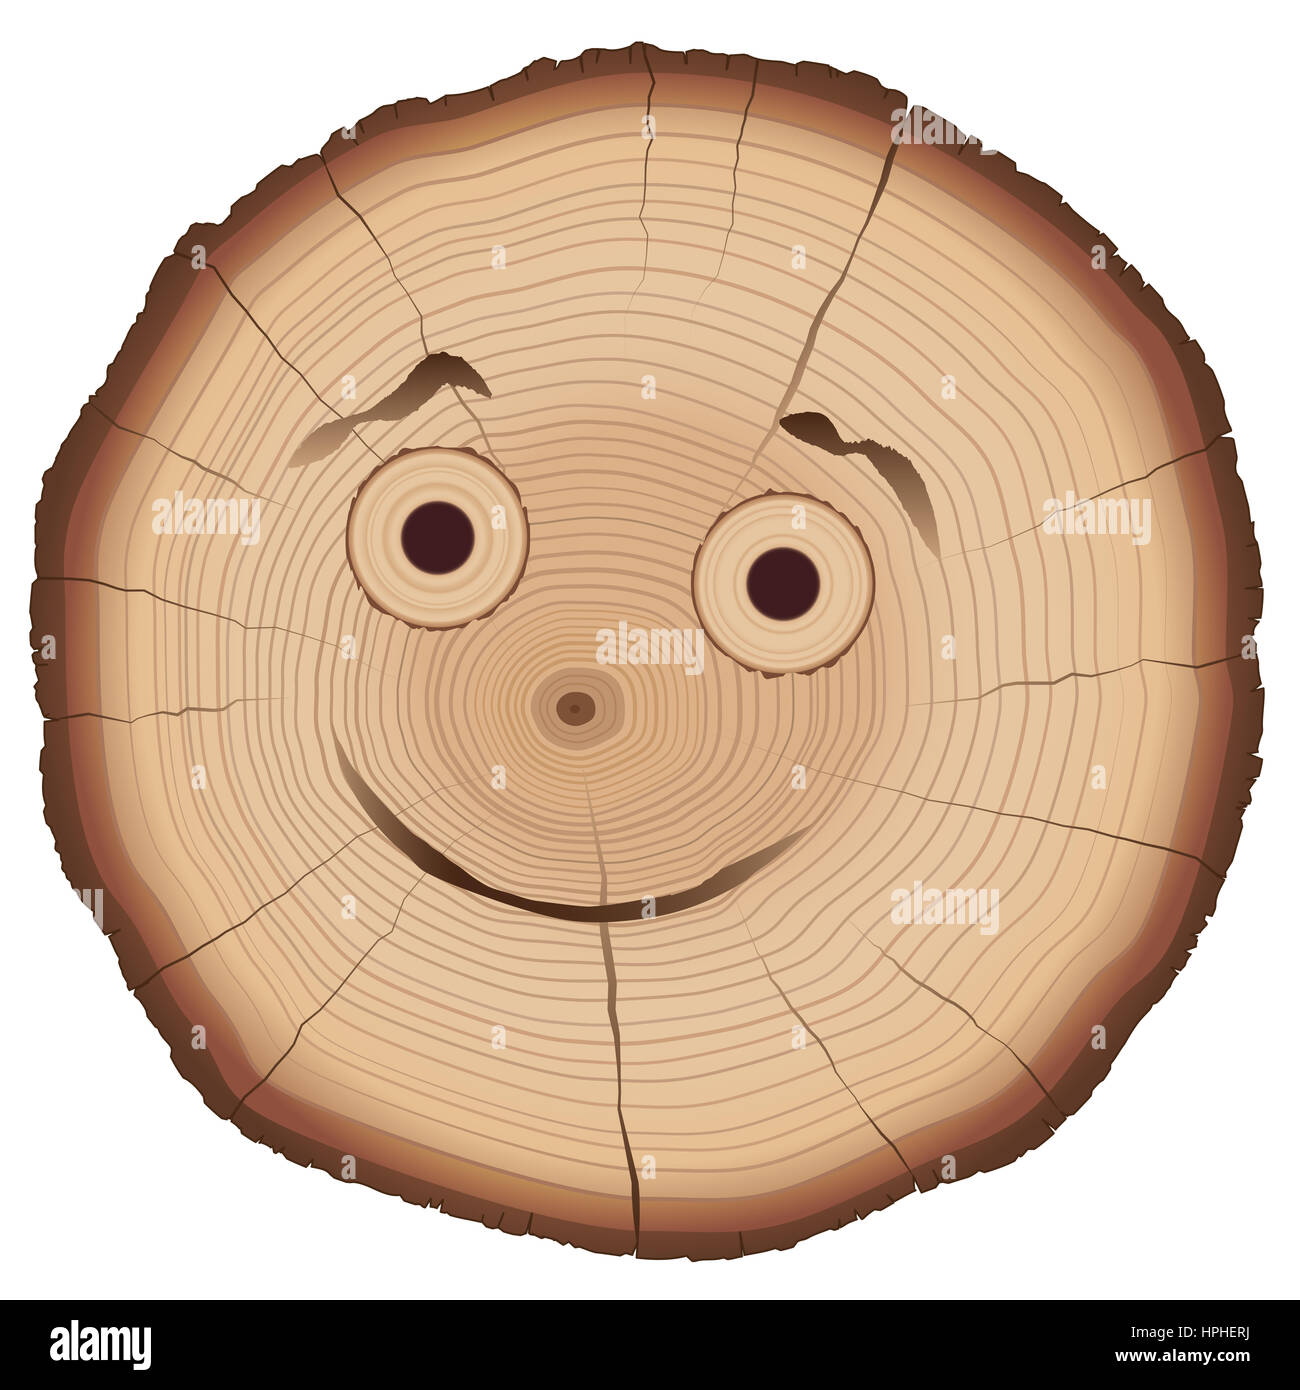 Coupe des arbres avec smiling face comique et de nombreux anneaux annuels. Banque D'Images